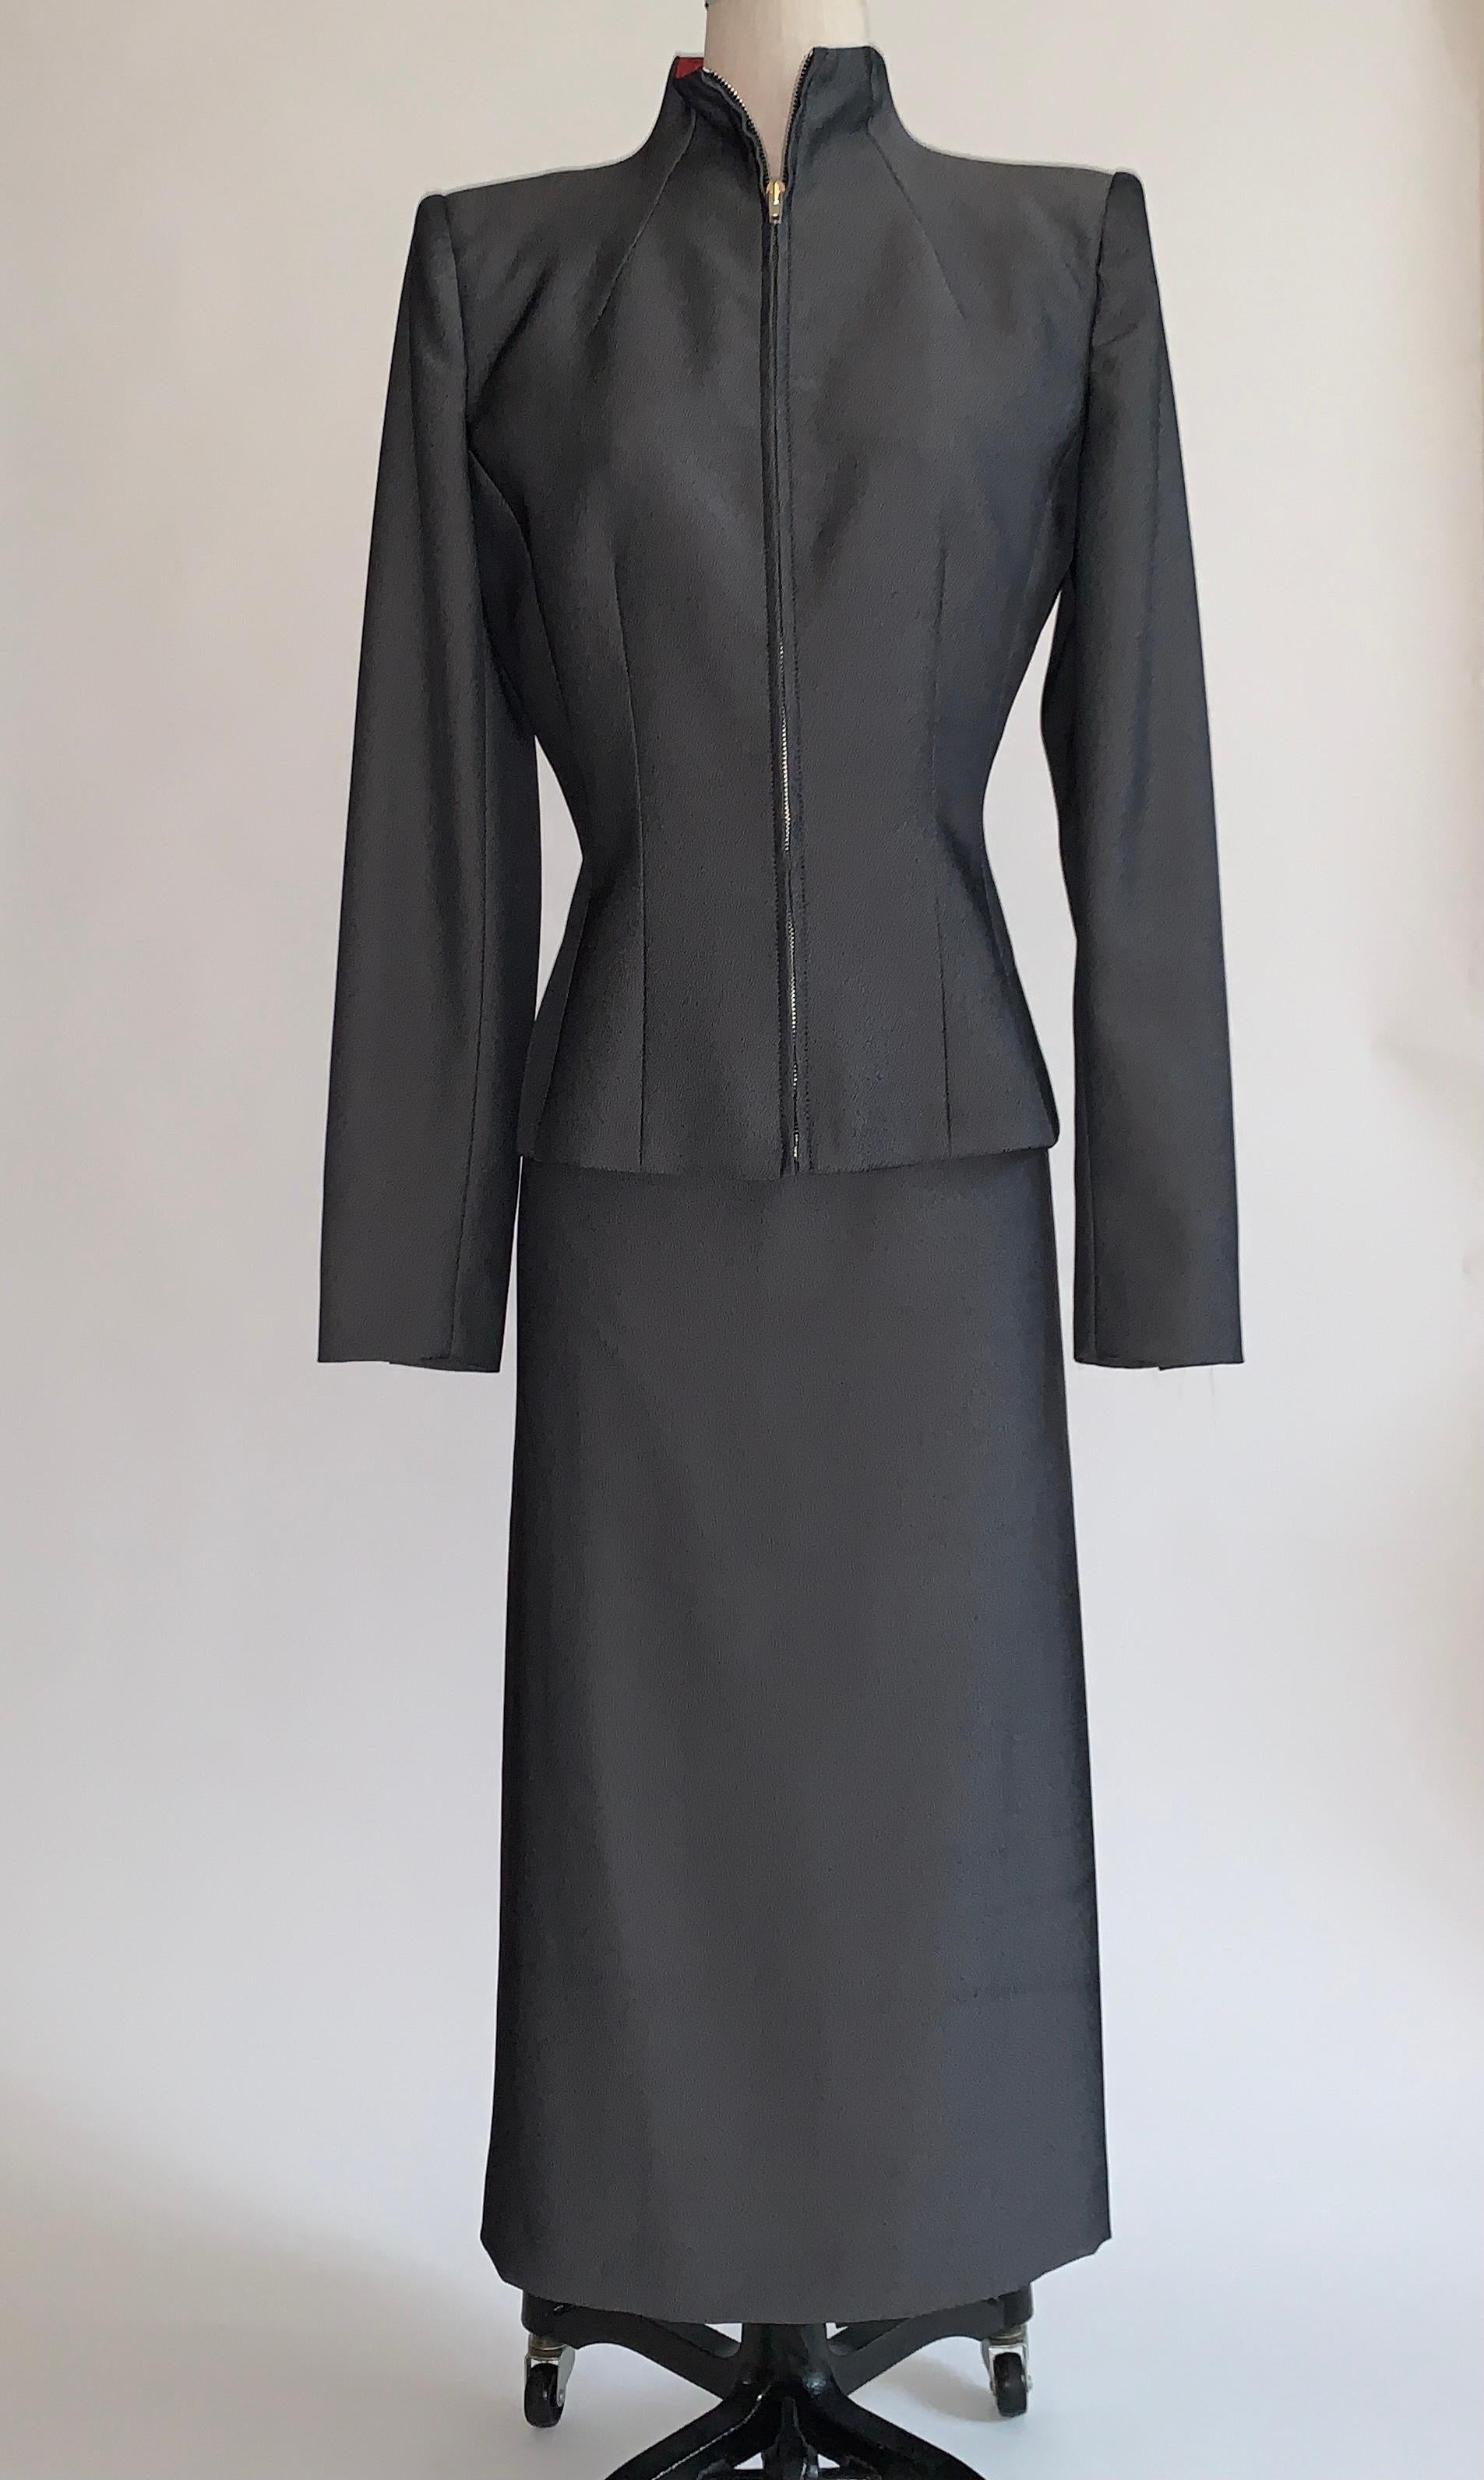 Vintage 1990 Alexander Mcqueen tailleur jupe gris de la collection Joan 1998. La combinaison est fabriquée dans un beau tissu gris et noir légèrement brillant. Cette veste de coupe étonnante est dotée d'une fermeture à glissière sur le devant et